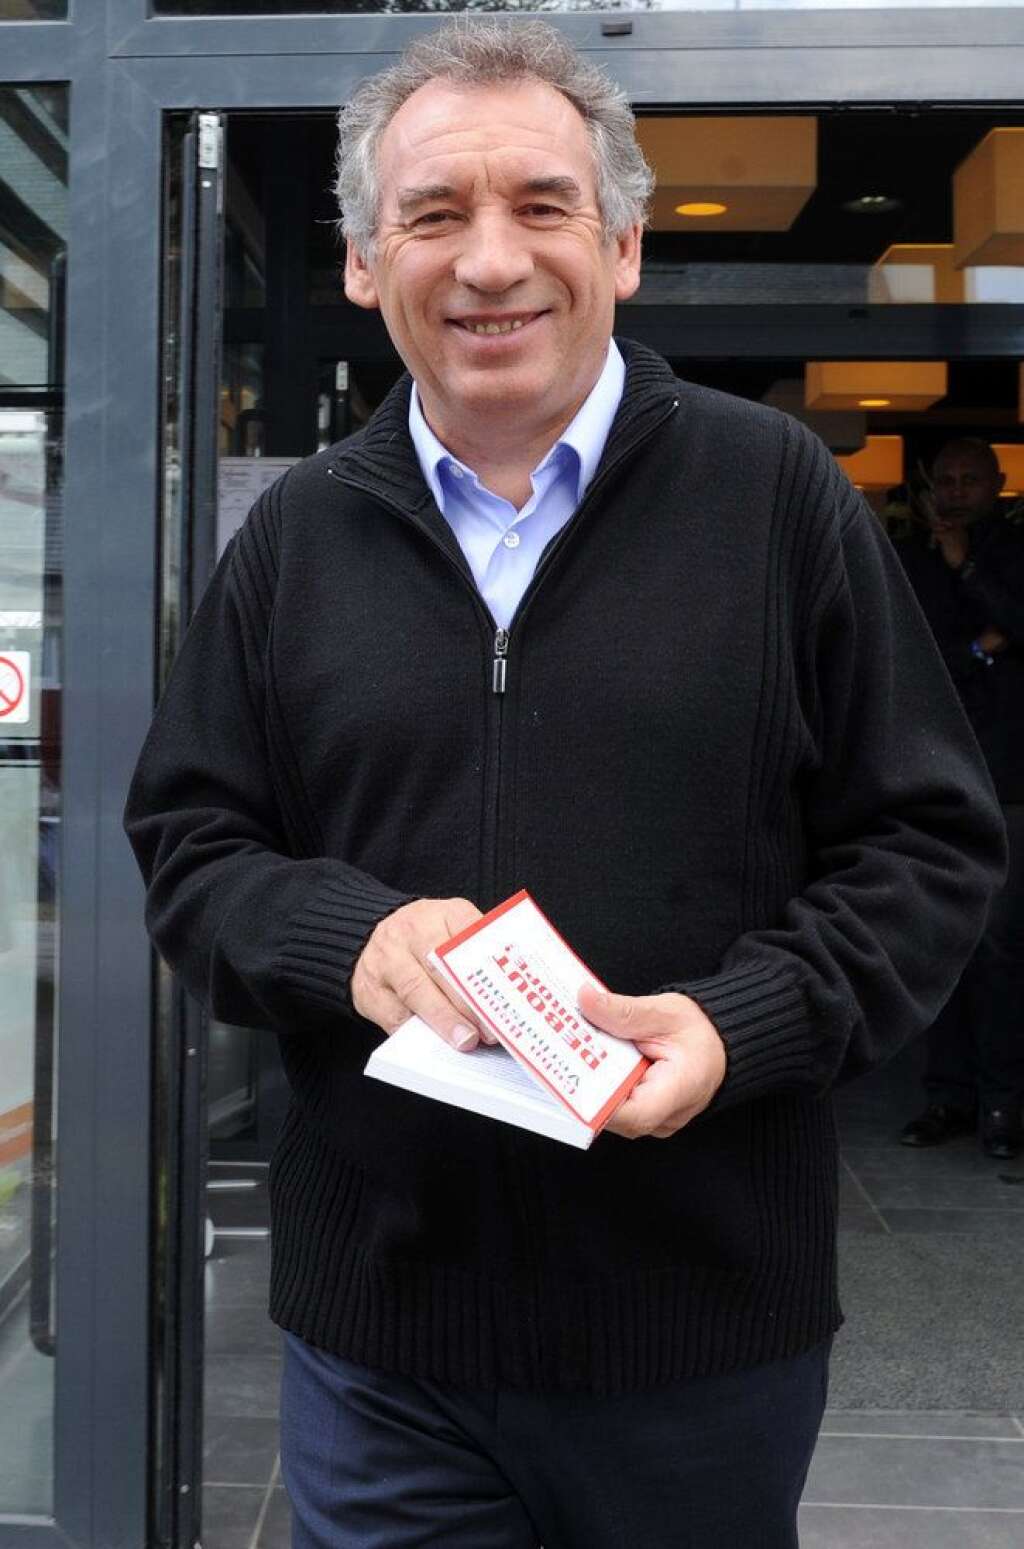 François Bayrou l'emporte à Pau - La troisième est la bonne pour François Bayrou. Le leader centriste, battu en 2001 et 2008, a remporté dimanche l'élection municipale à Pau, battant au passage le député socialiste David Habib. Son entourage évoque une victoire avec environ 60% des voix.